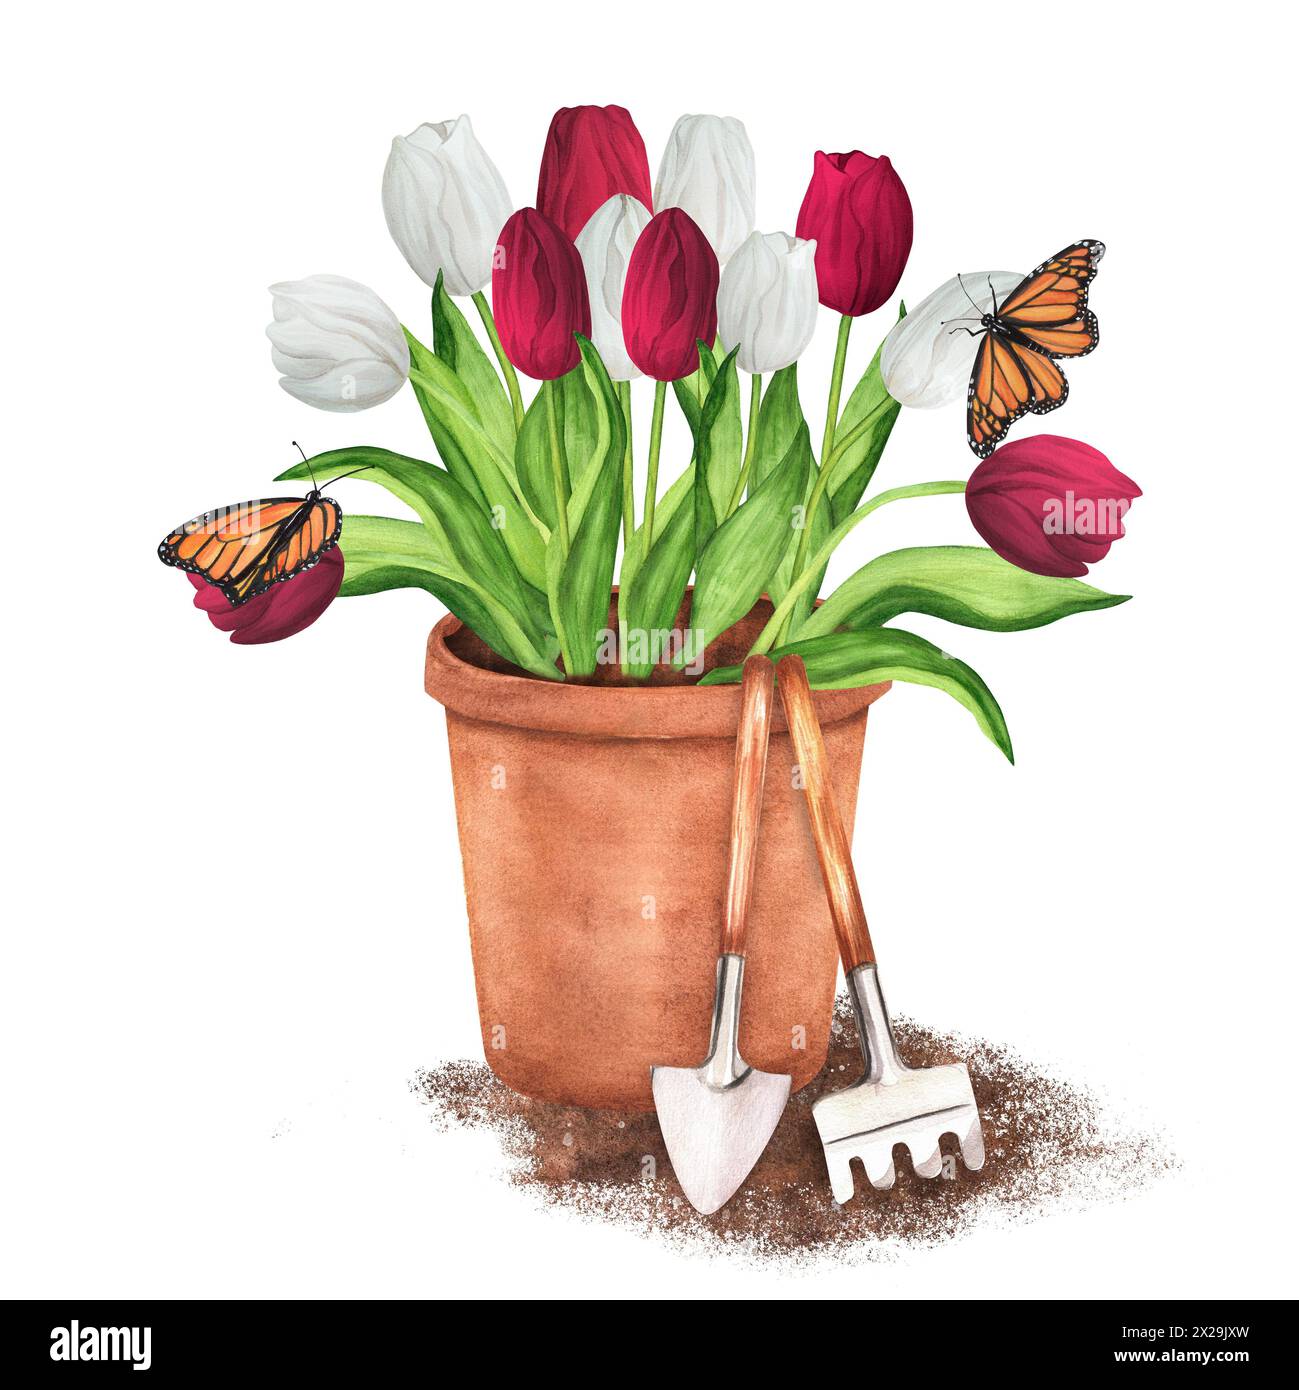 Illustrazione ad acquerello disegnata a mano. Vaso di fiori di terracotta con tulipani bianchi e rossi e farfalle. Vaso da giardino con attrezzi da giardino - rastrello e cazzuola Foto Stock